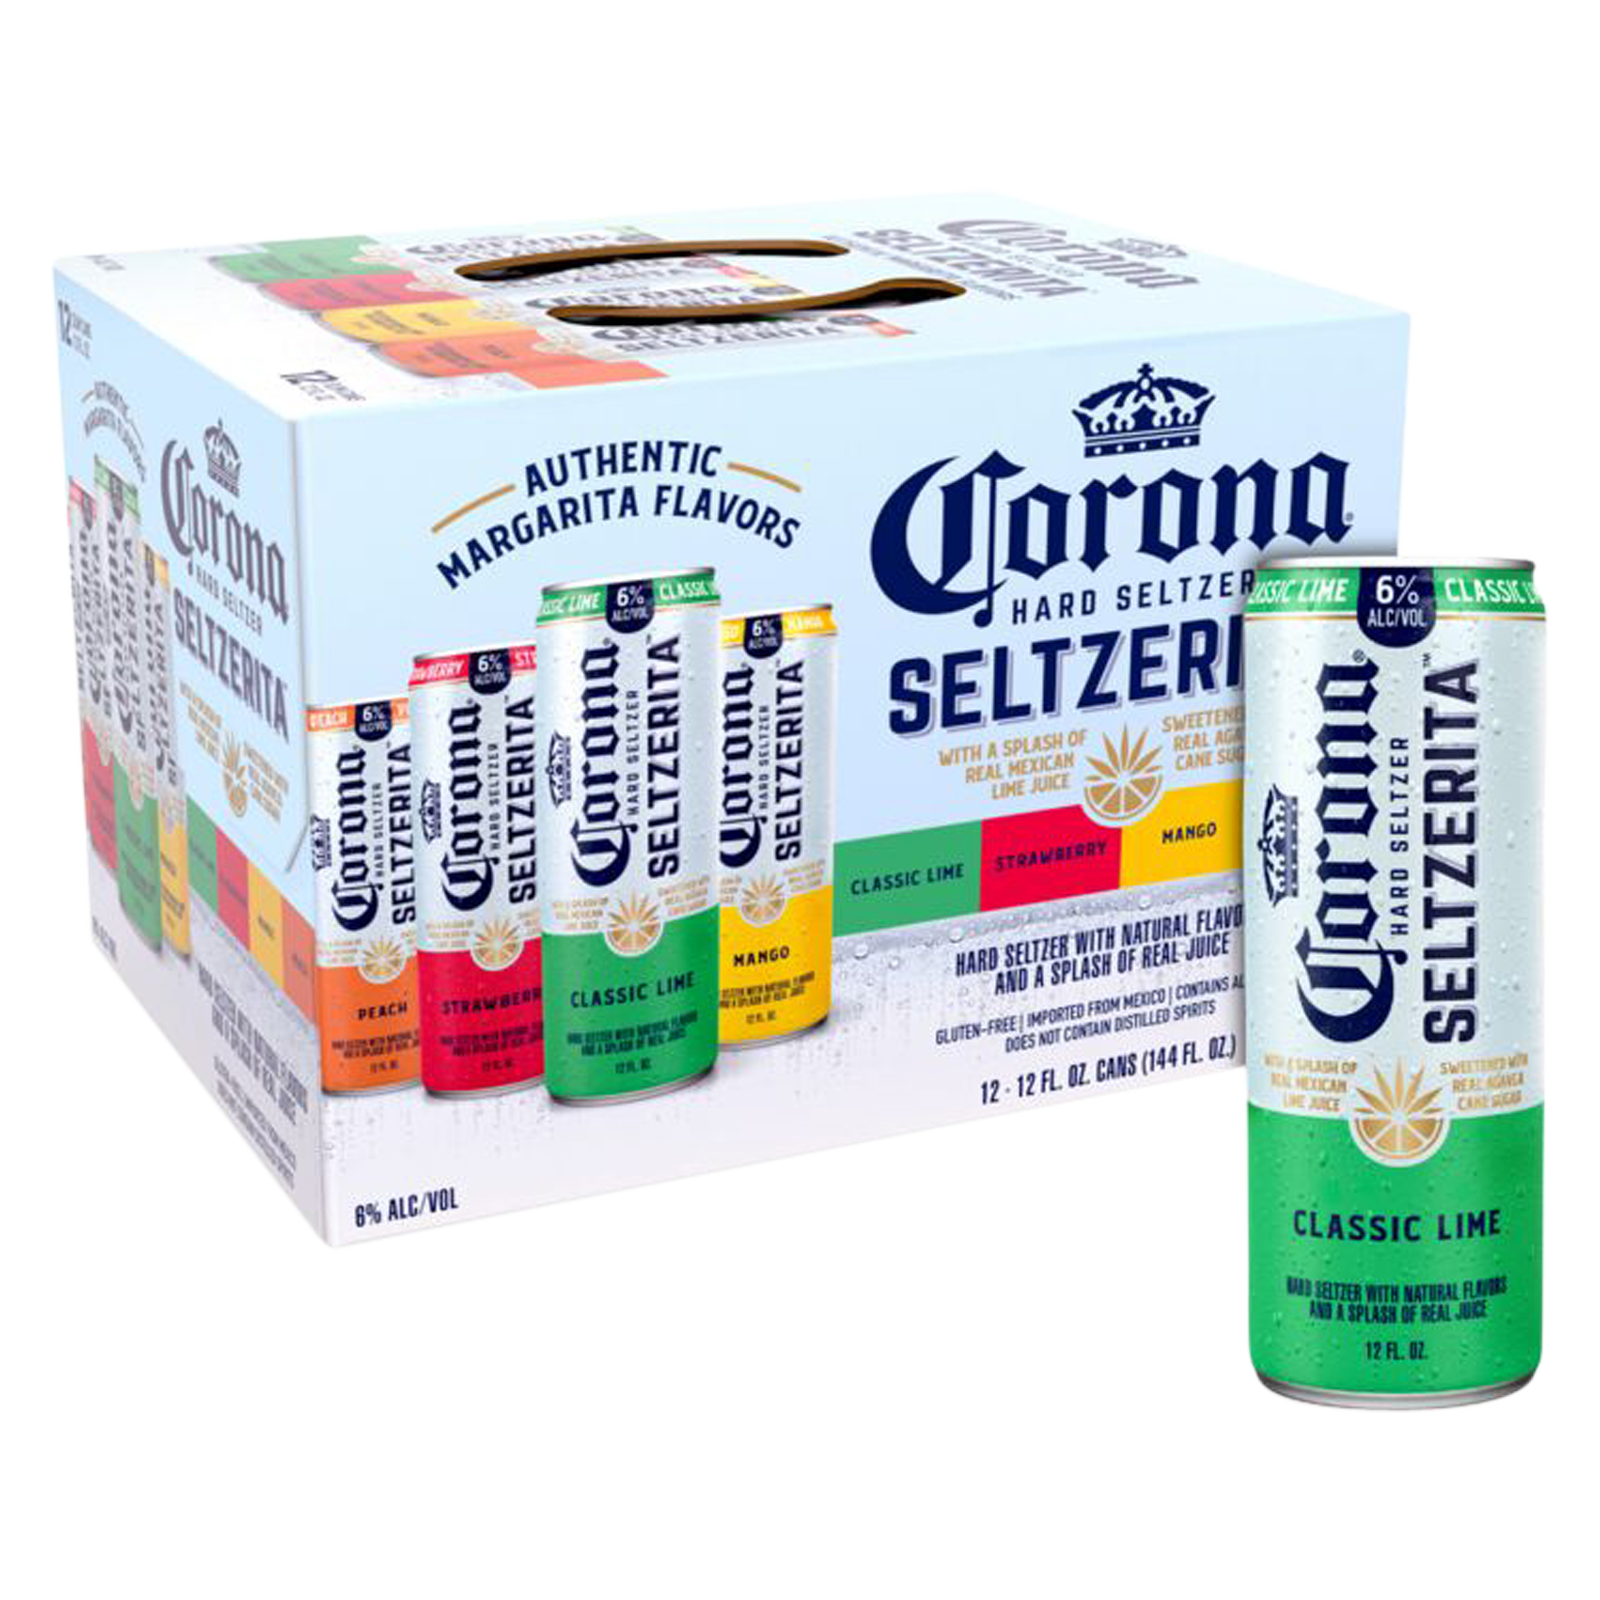 Corona Hard Seltzer Seltzerita Variety Pack 12pk 12oz Can 6.0% ABV